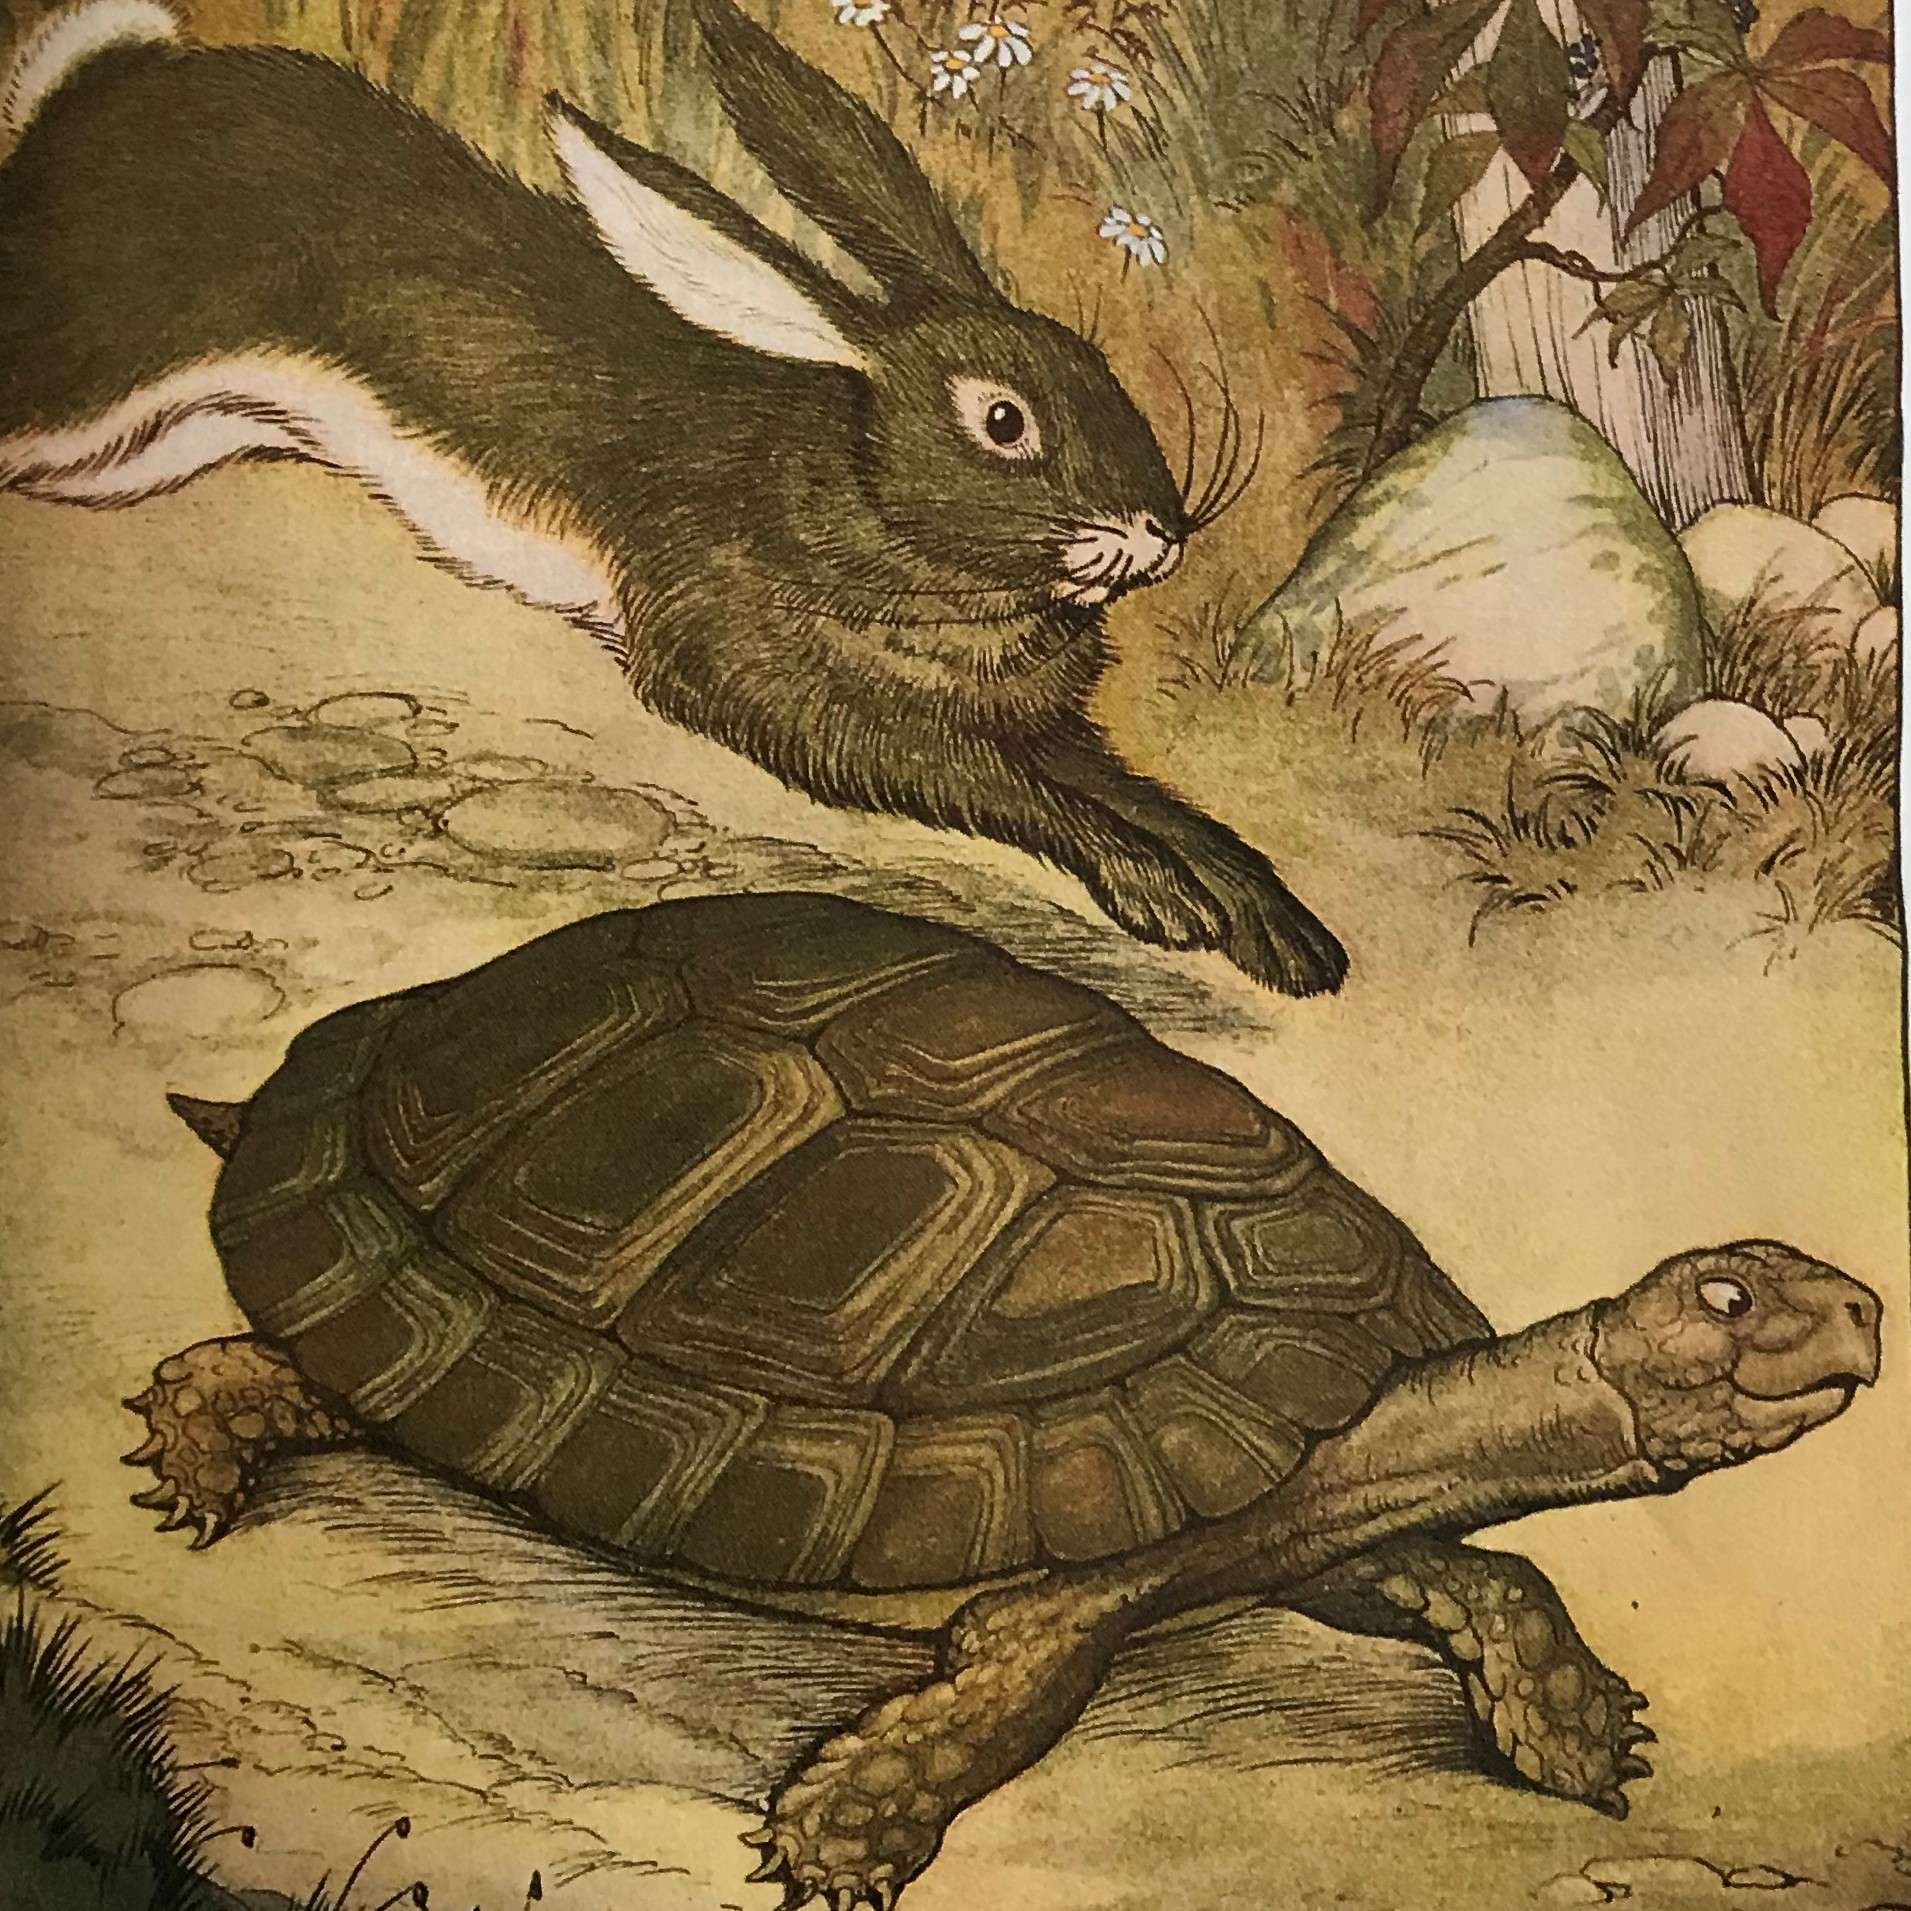 Заяц и черепаха 4 класс